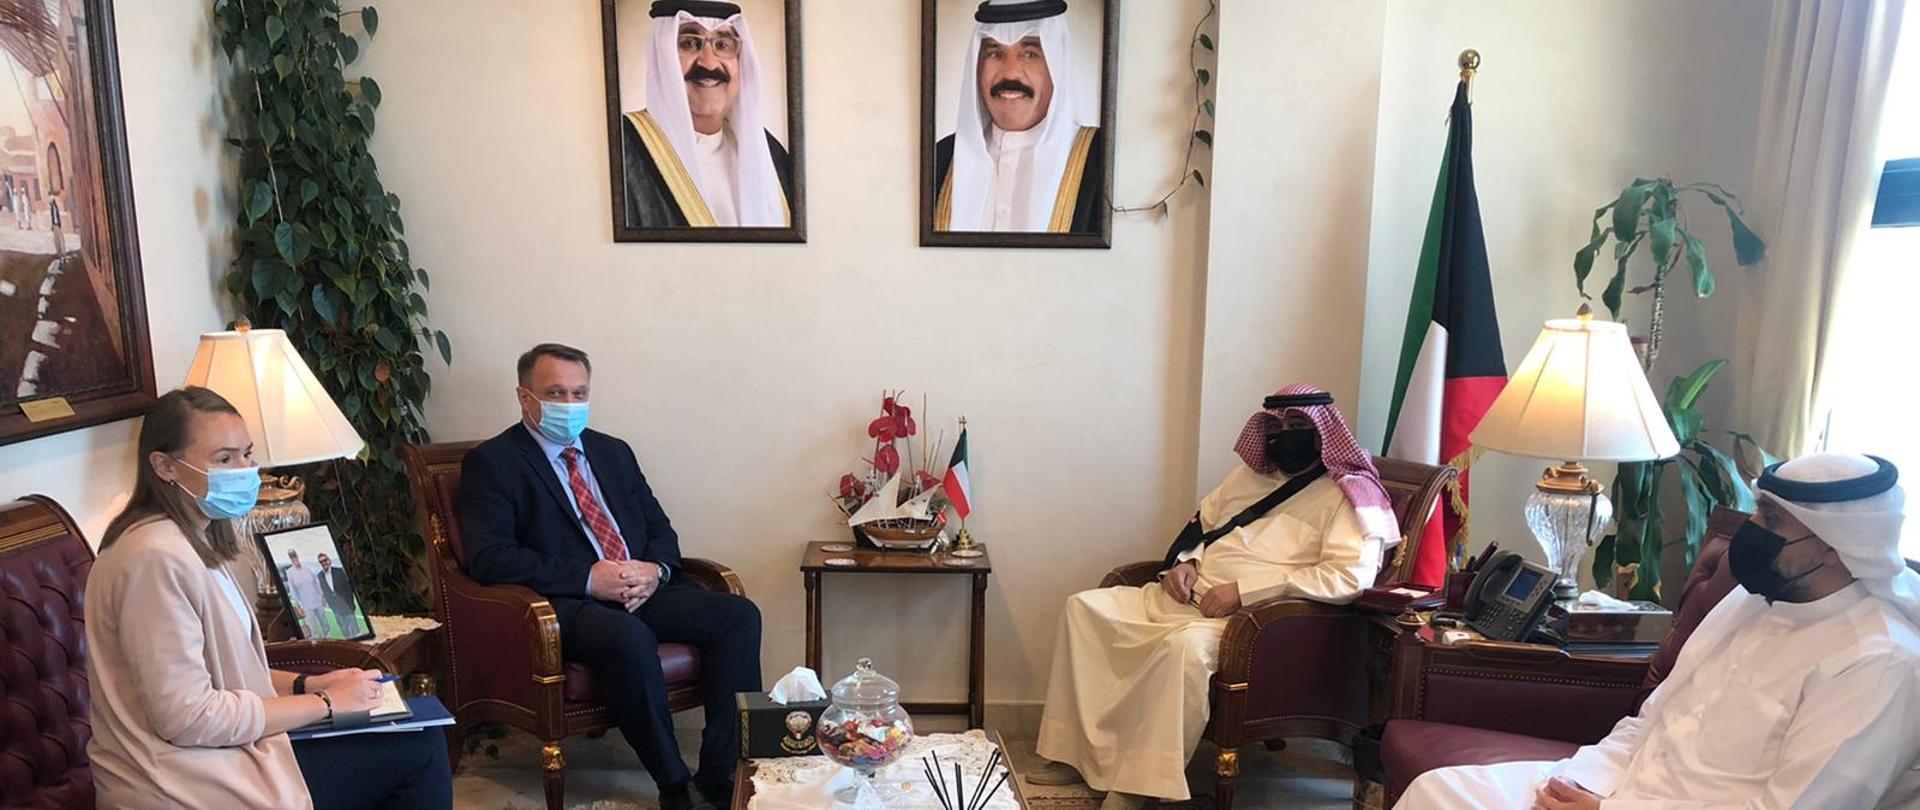 spotkanie z Ambasadorem Walidem Alim Al-Khubaisim, asystentem ministra spraw zagranicznych Państwa Kuwejt ds. europejskich